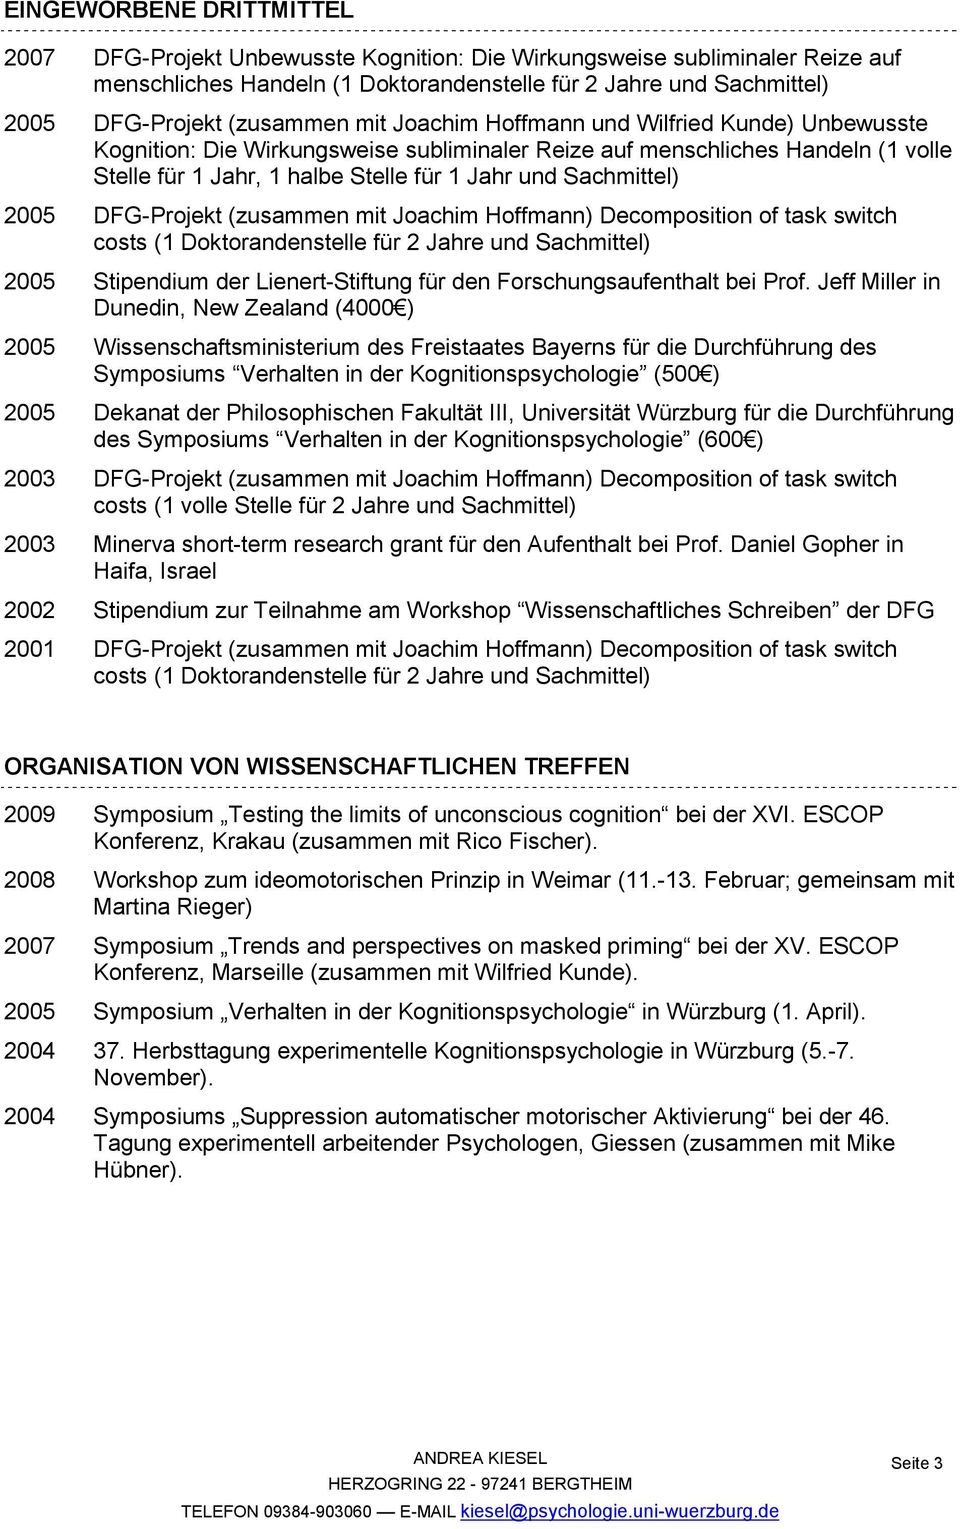 Sachmittel) 2005 DFG-Projekt (zusammen mit Joachim Hoffmann) Decomposition of task switch costs (1 Doktorandenstelle für 2 Jahre und Sachmittel) 2005 Stipendium der Lienert-Stiftung für den